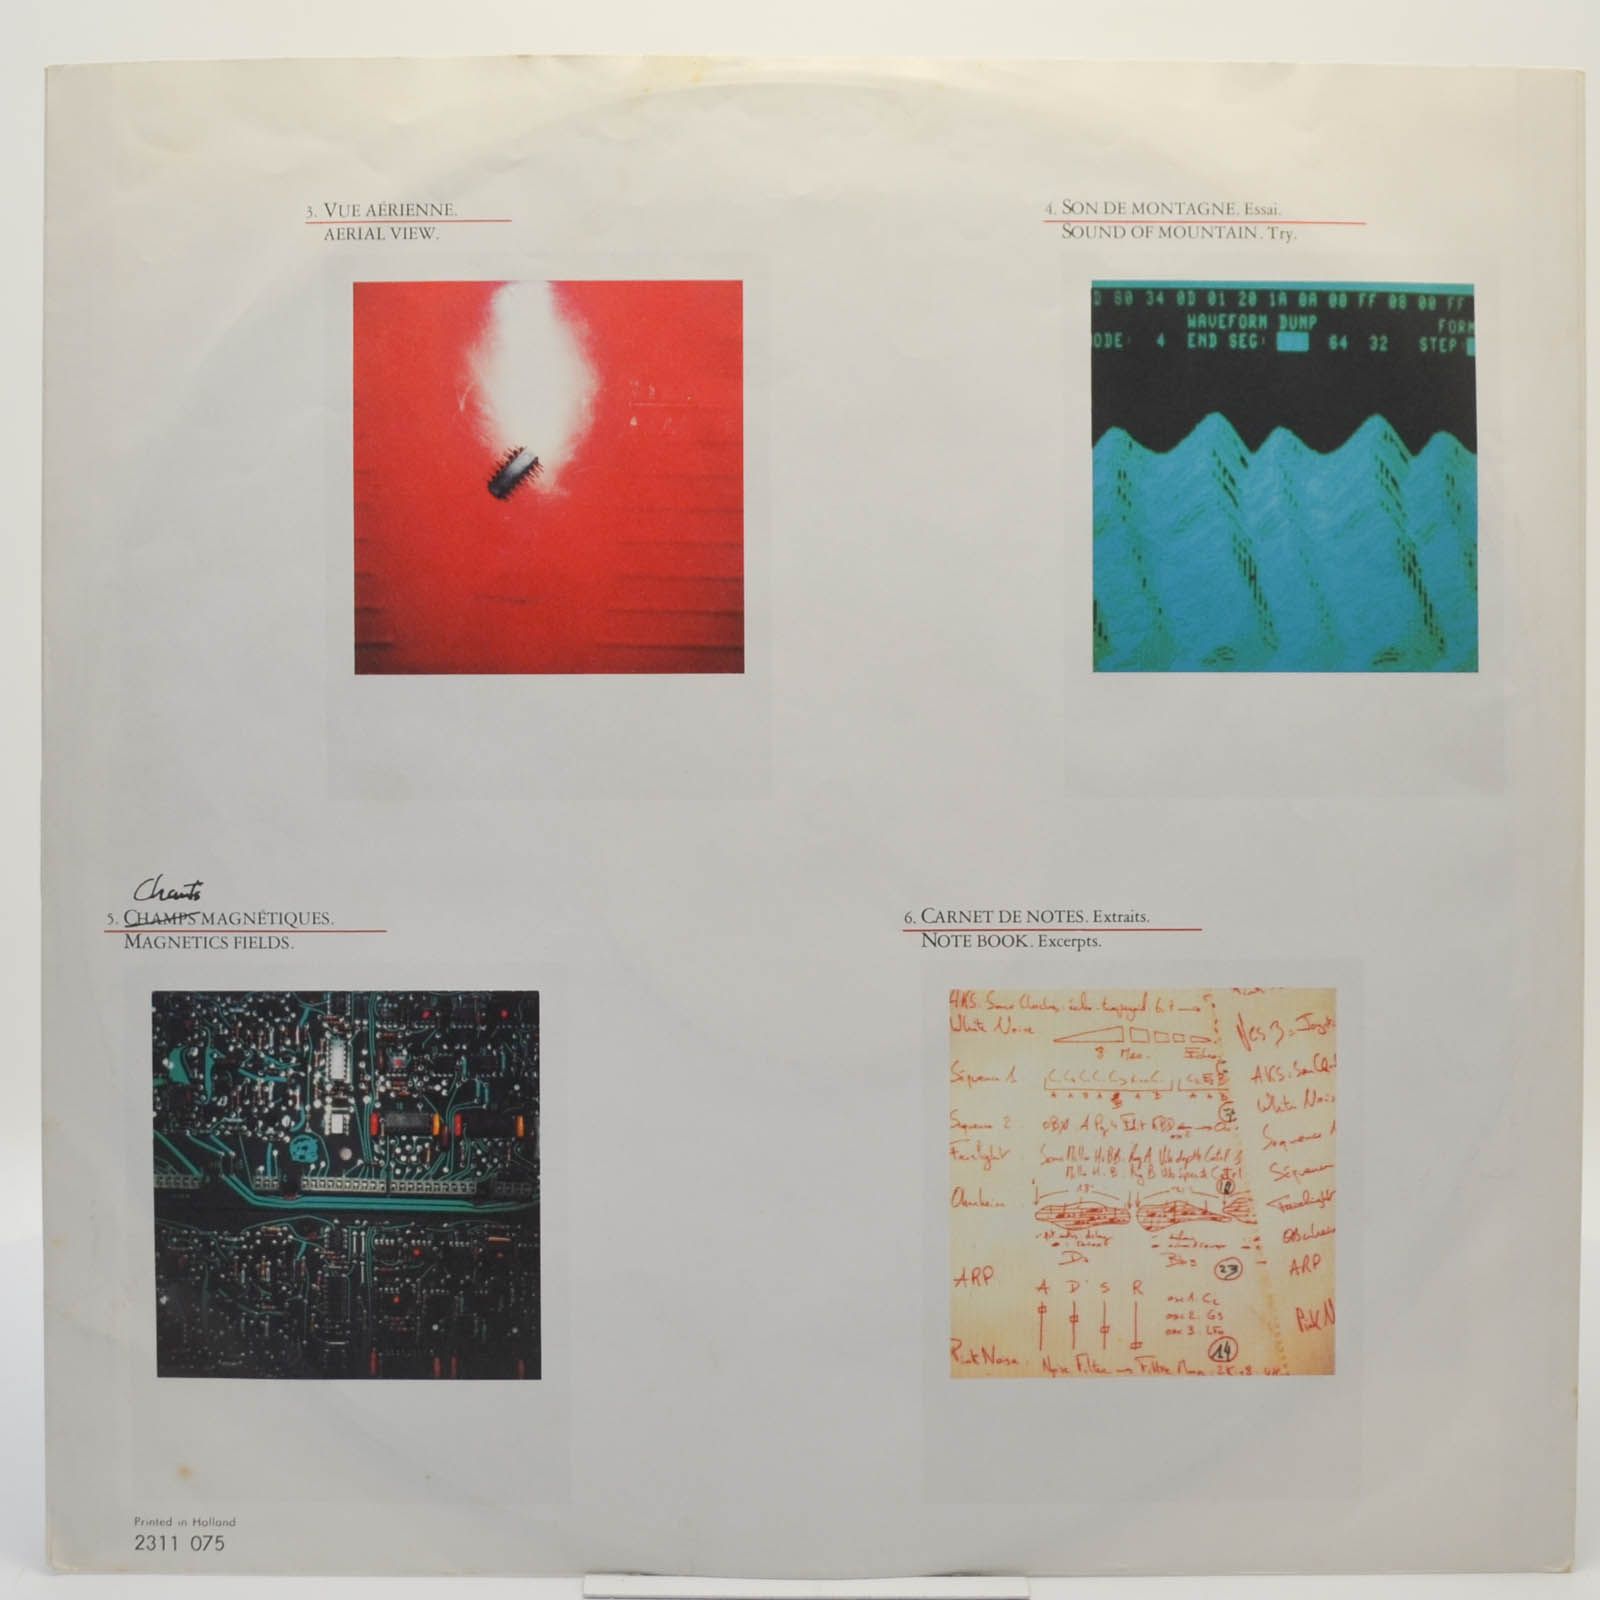 Jean-Michel Jarre — Magnetic Fields, 1981